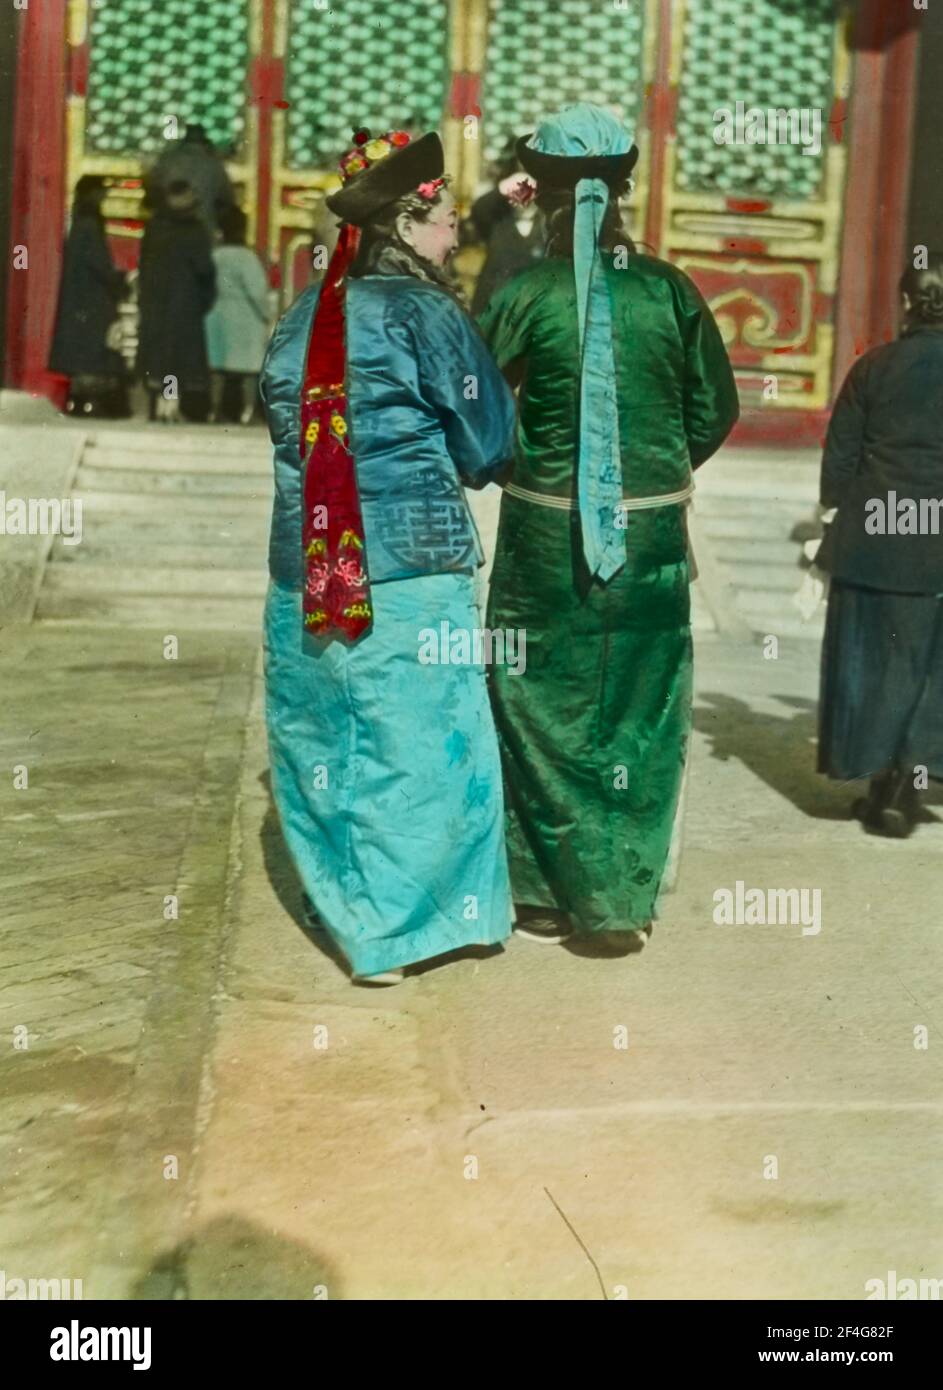 Foto a tutta lunghezza di due donne manchu della dinastia Qing, dalla parte posteriore, con acconciature liangbatou moderate mentre attraversi un cortile soleggiato nella Città Proibita, Pechino, Cina, 1918. Dalla collezione di fotografie di Sidney D. Gamble. () Foto Stock